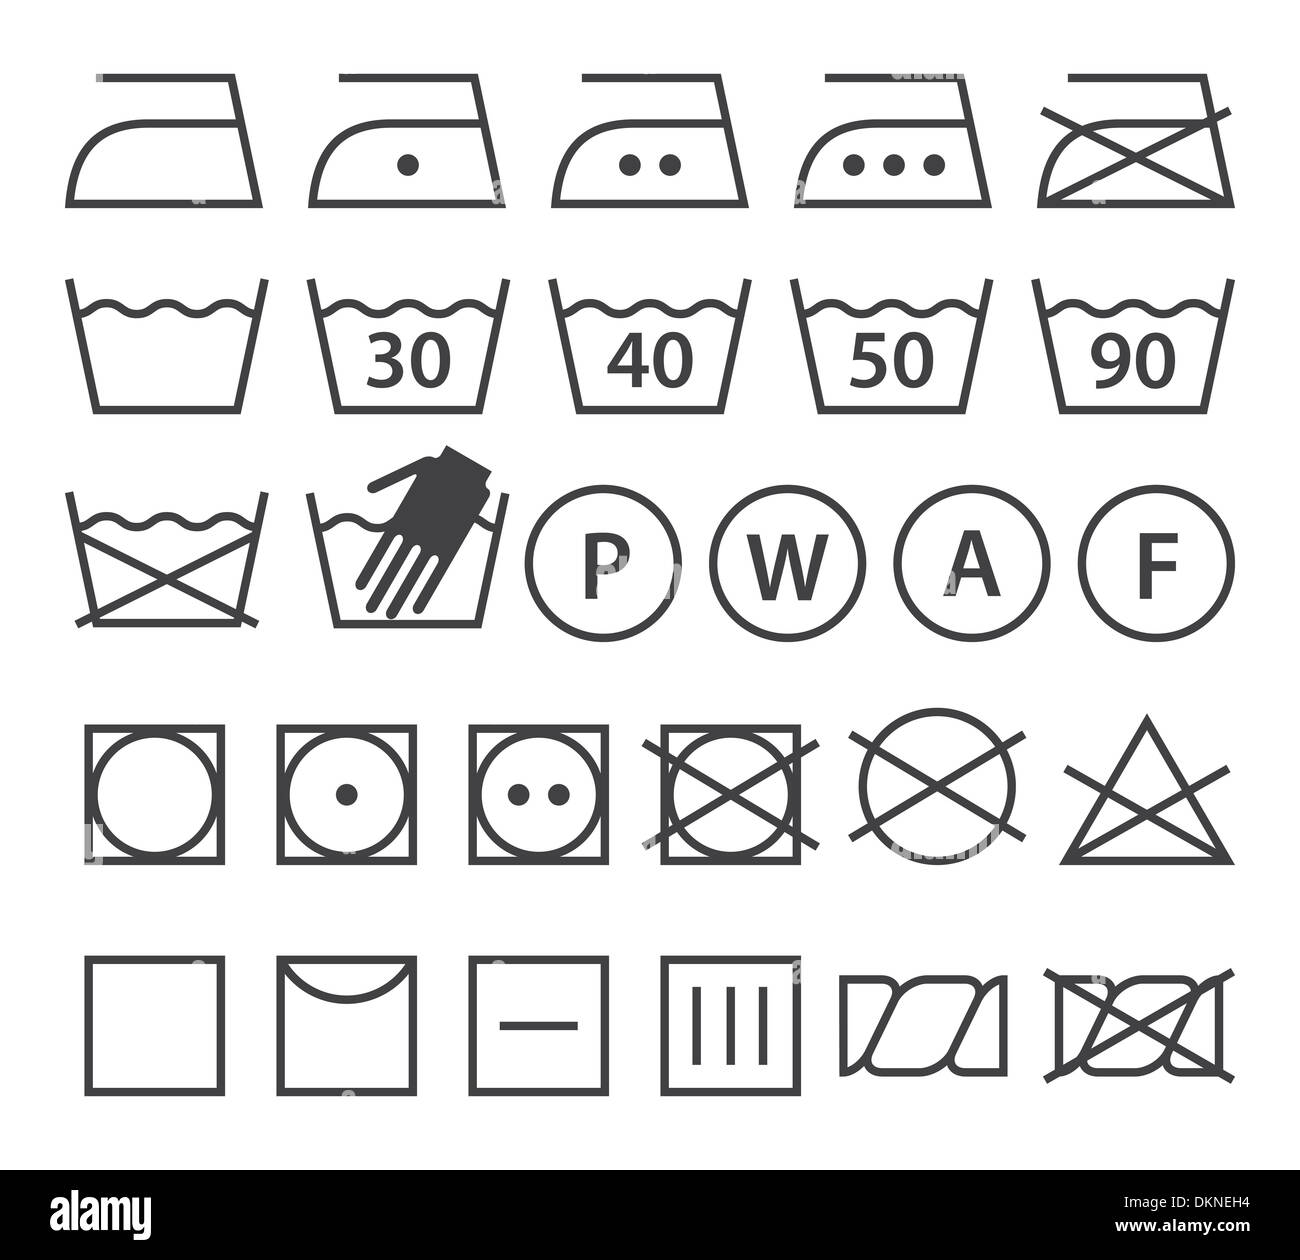 Set Of Washing Symbols Laundry Icons Isolated On White Background Stock Photo Alamy